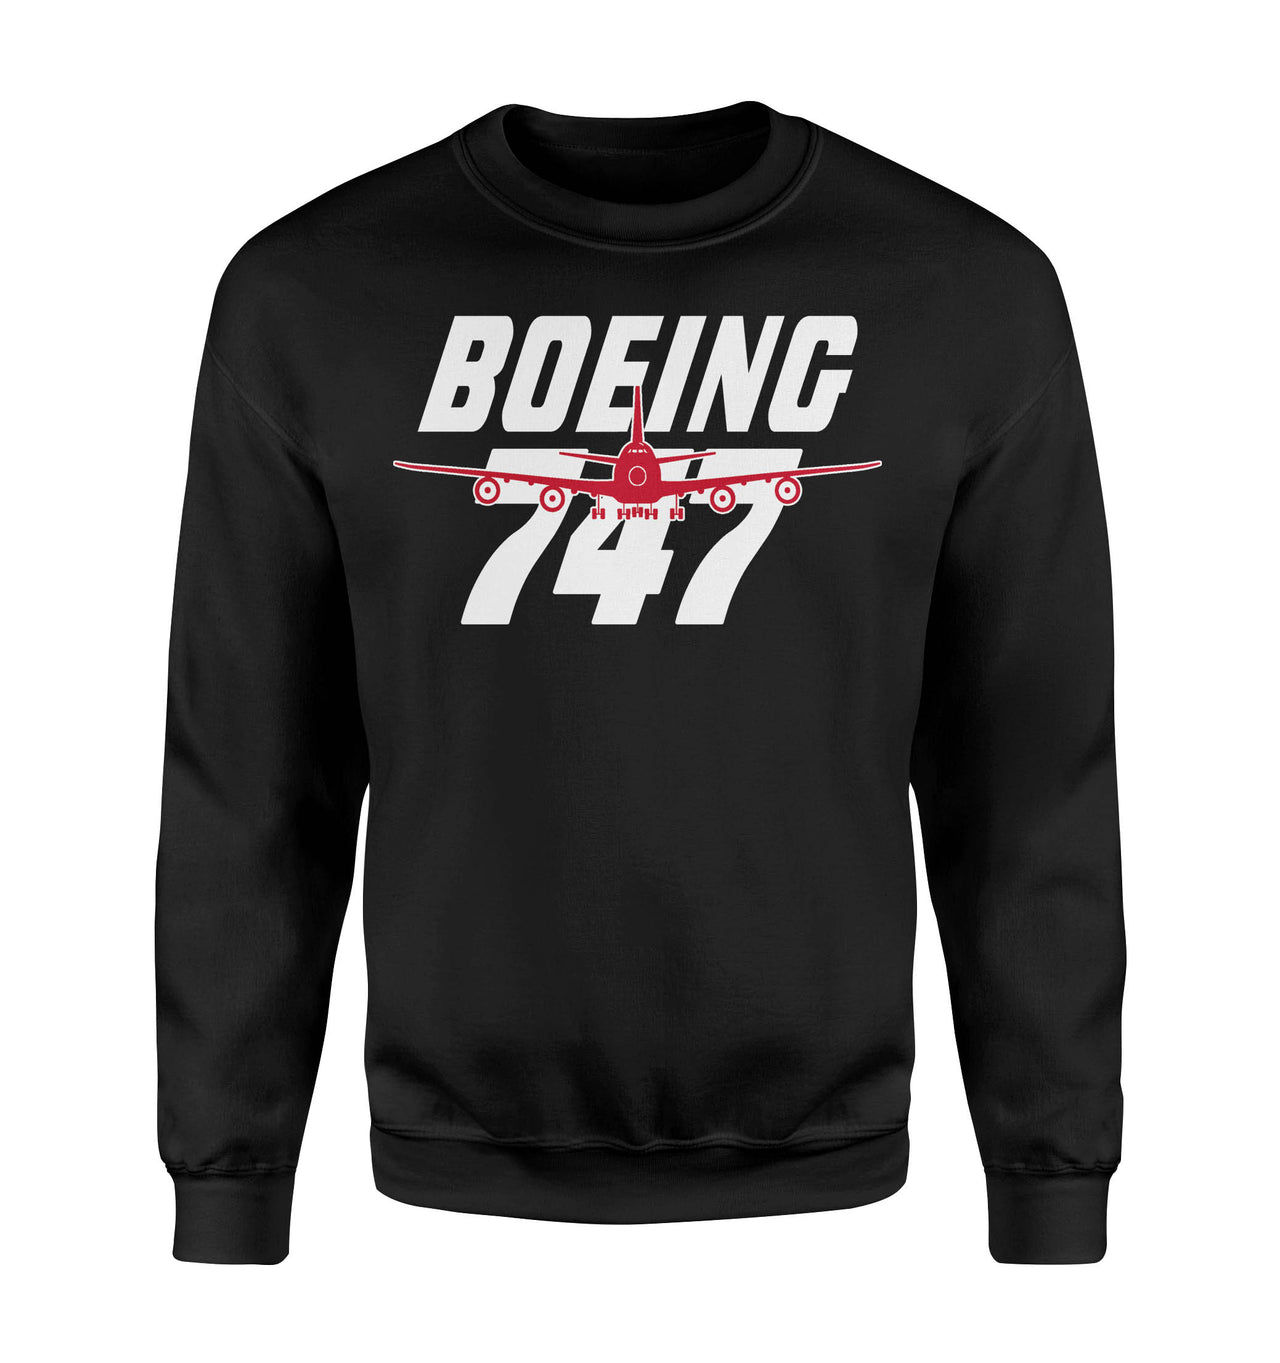 Amazing Boeing 747 Designed Sweatshirts